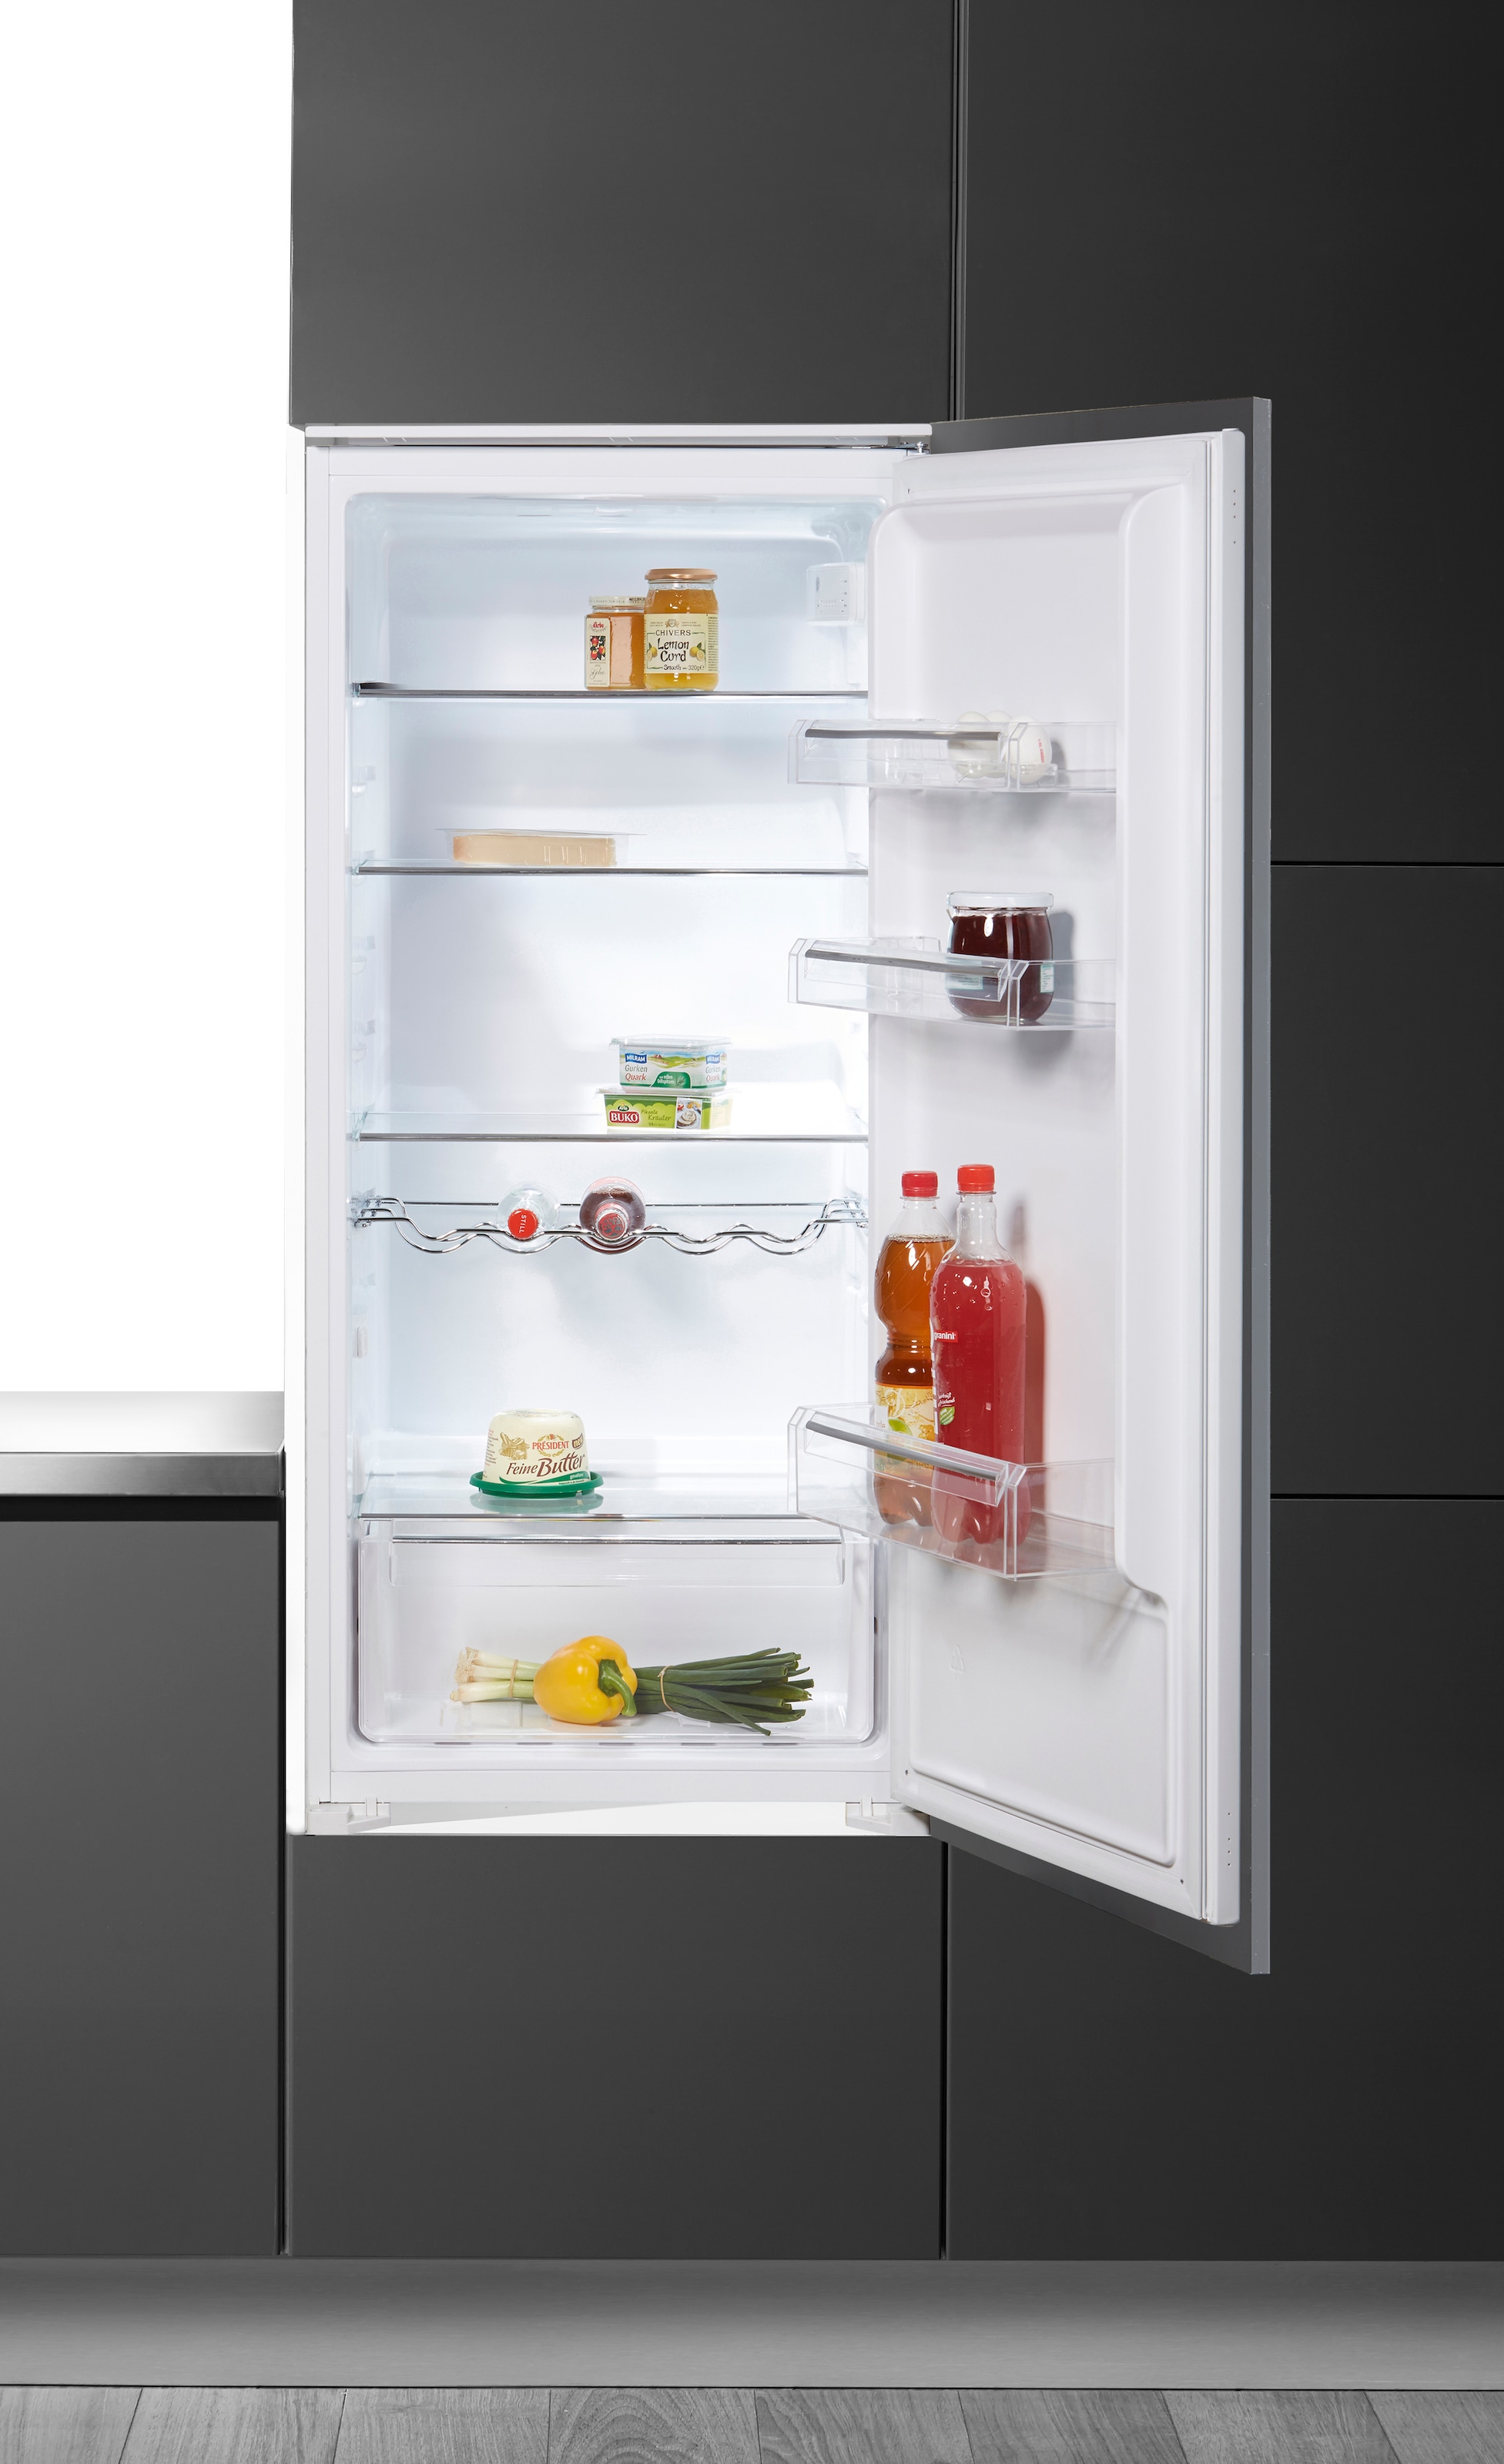 Hanseatic Einbaukühlschrank, HEKS12254F, 123 cm hoch, 54 cm breit online  kaufen